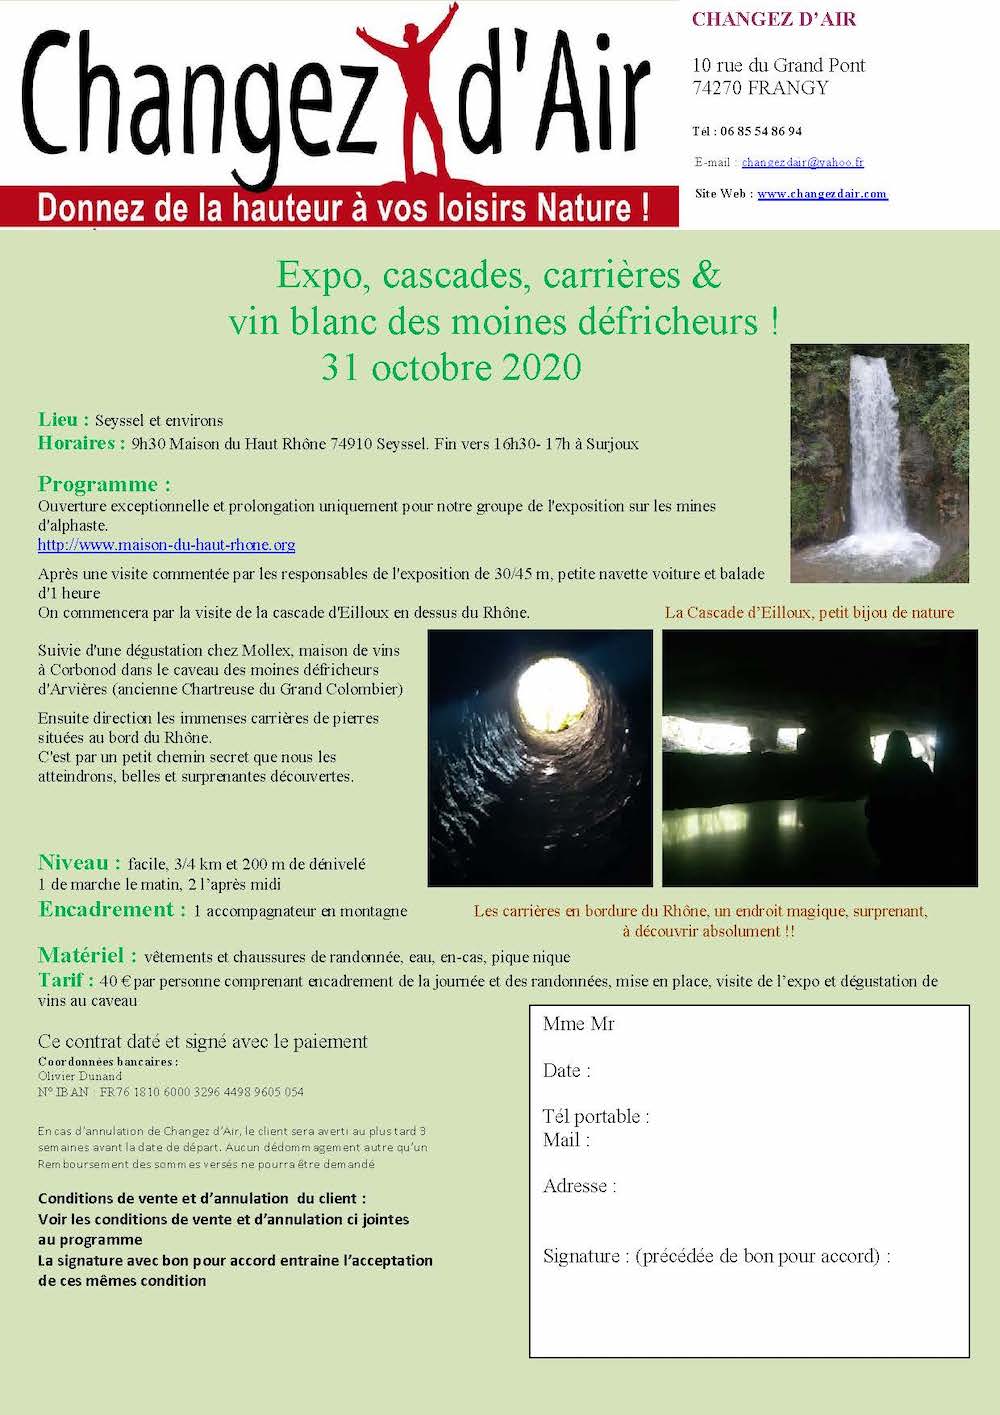 changezdair Nature et patrimoine Seyssel 31 10 2020 Page 1